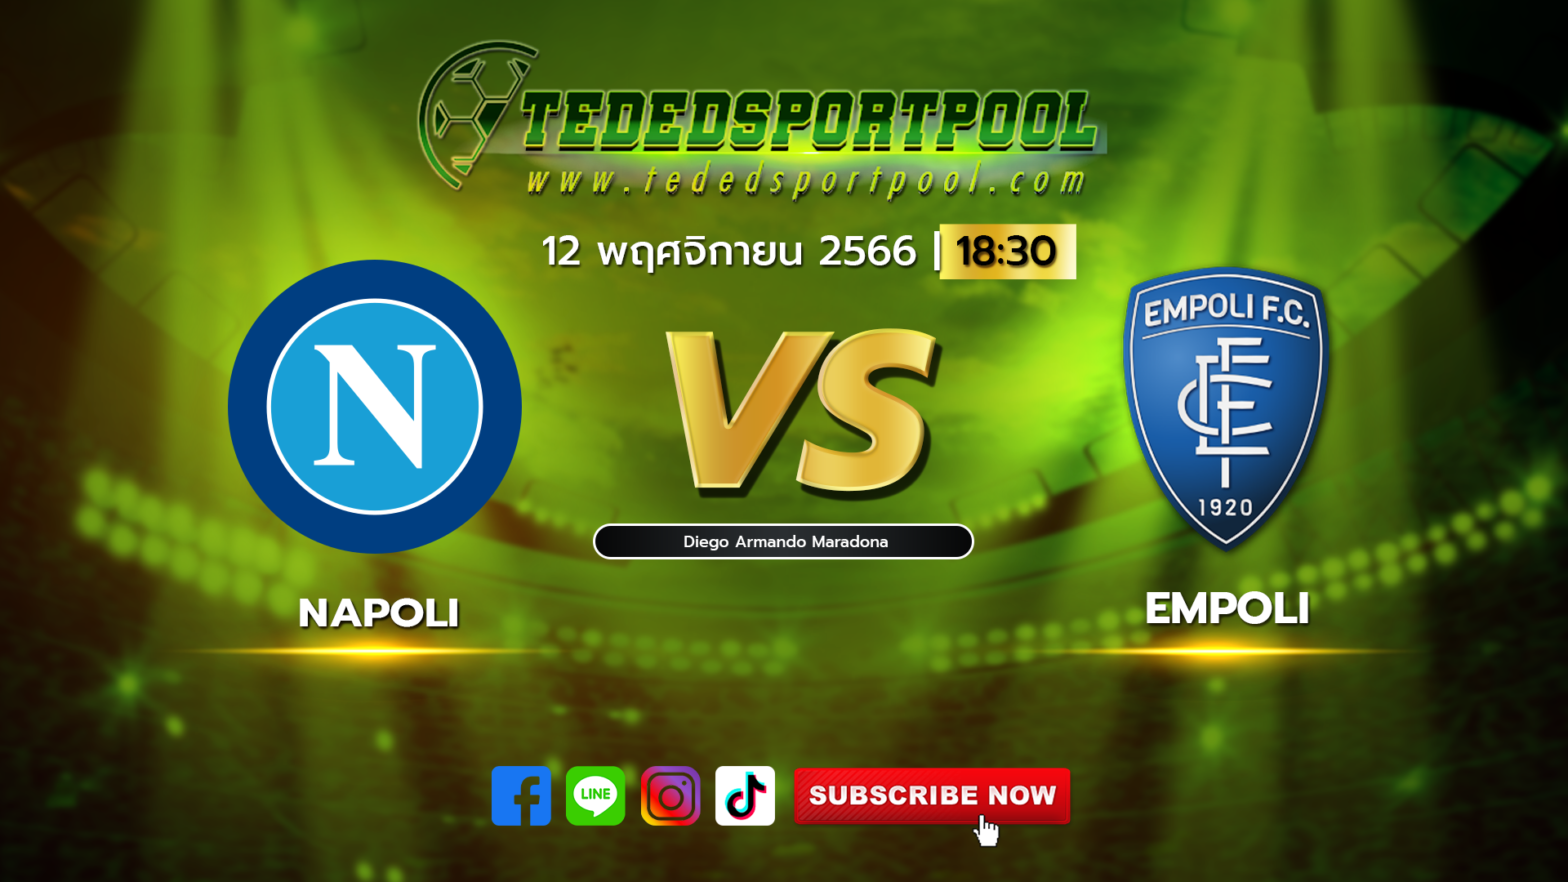 Napoli_vs_Empoli